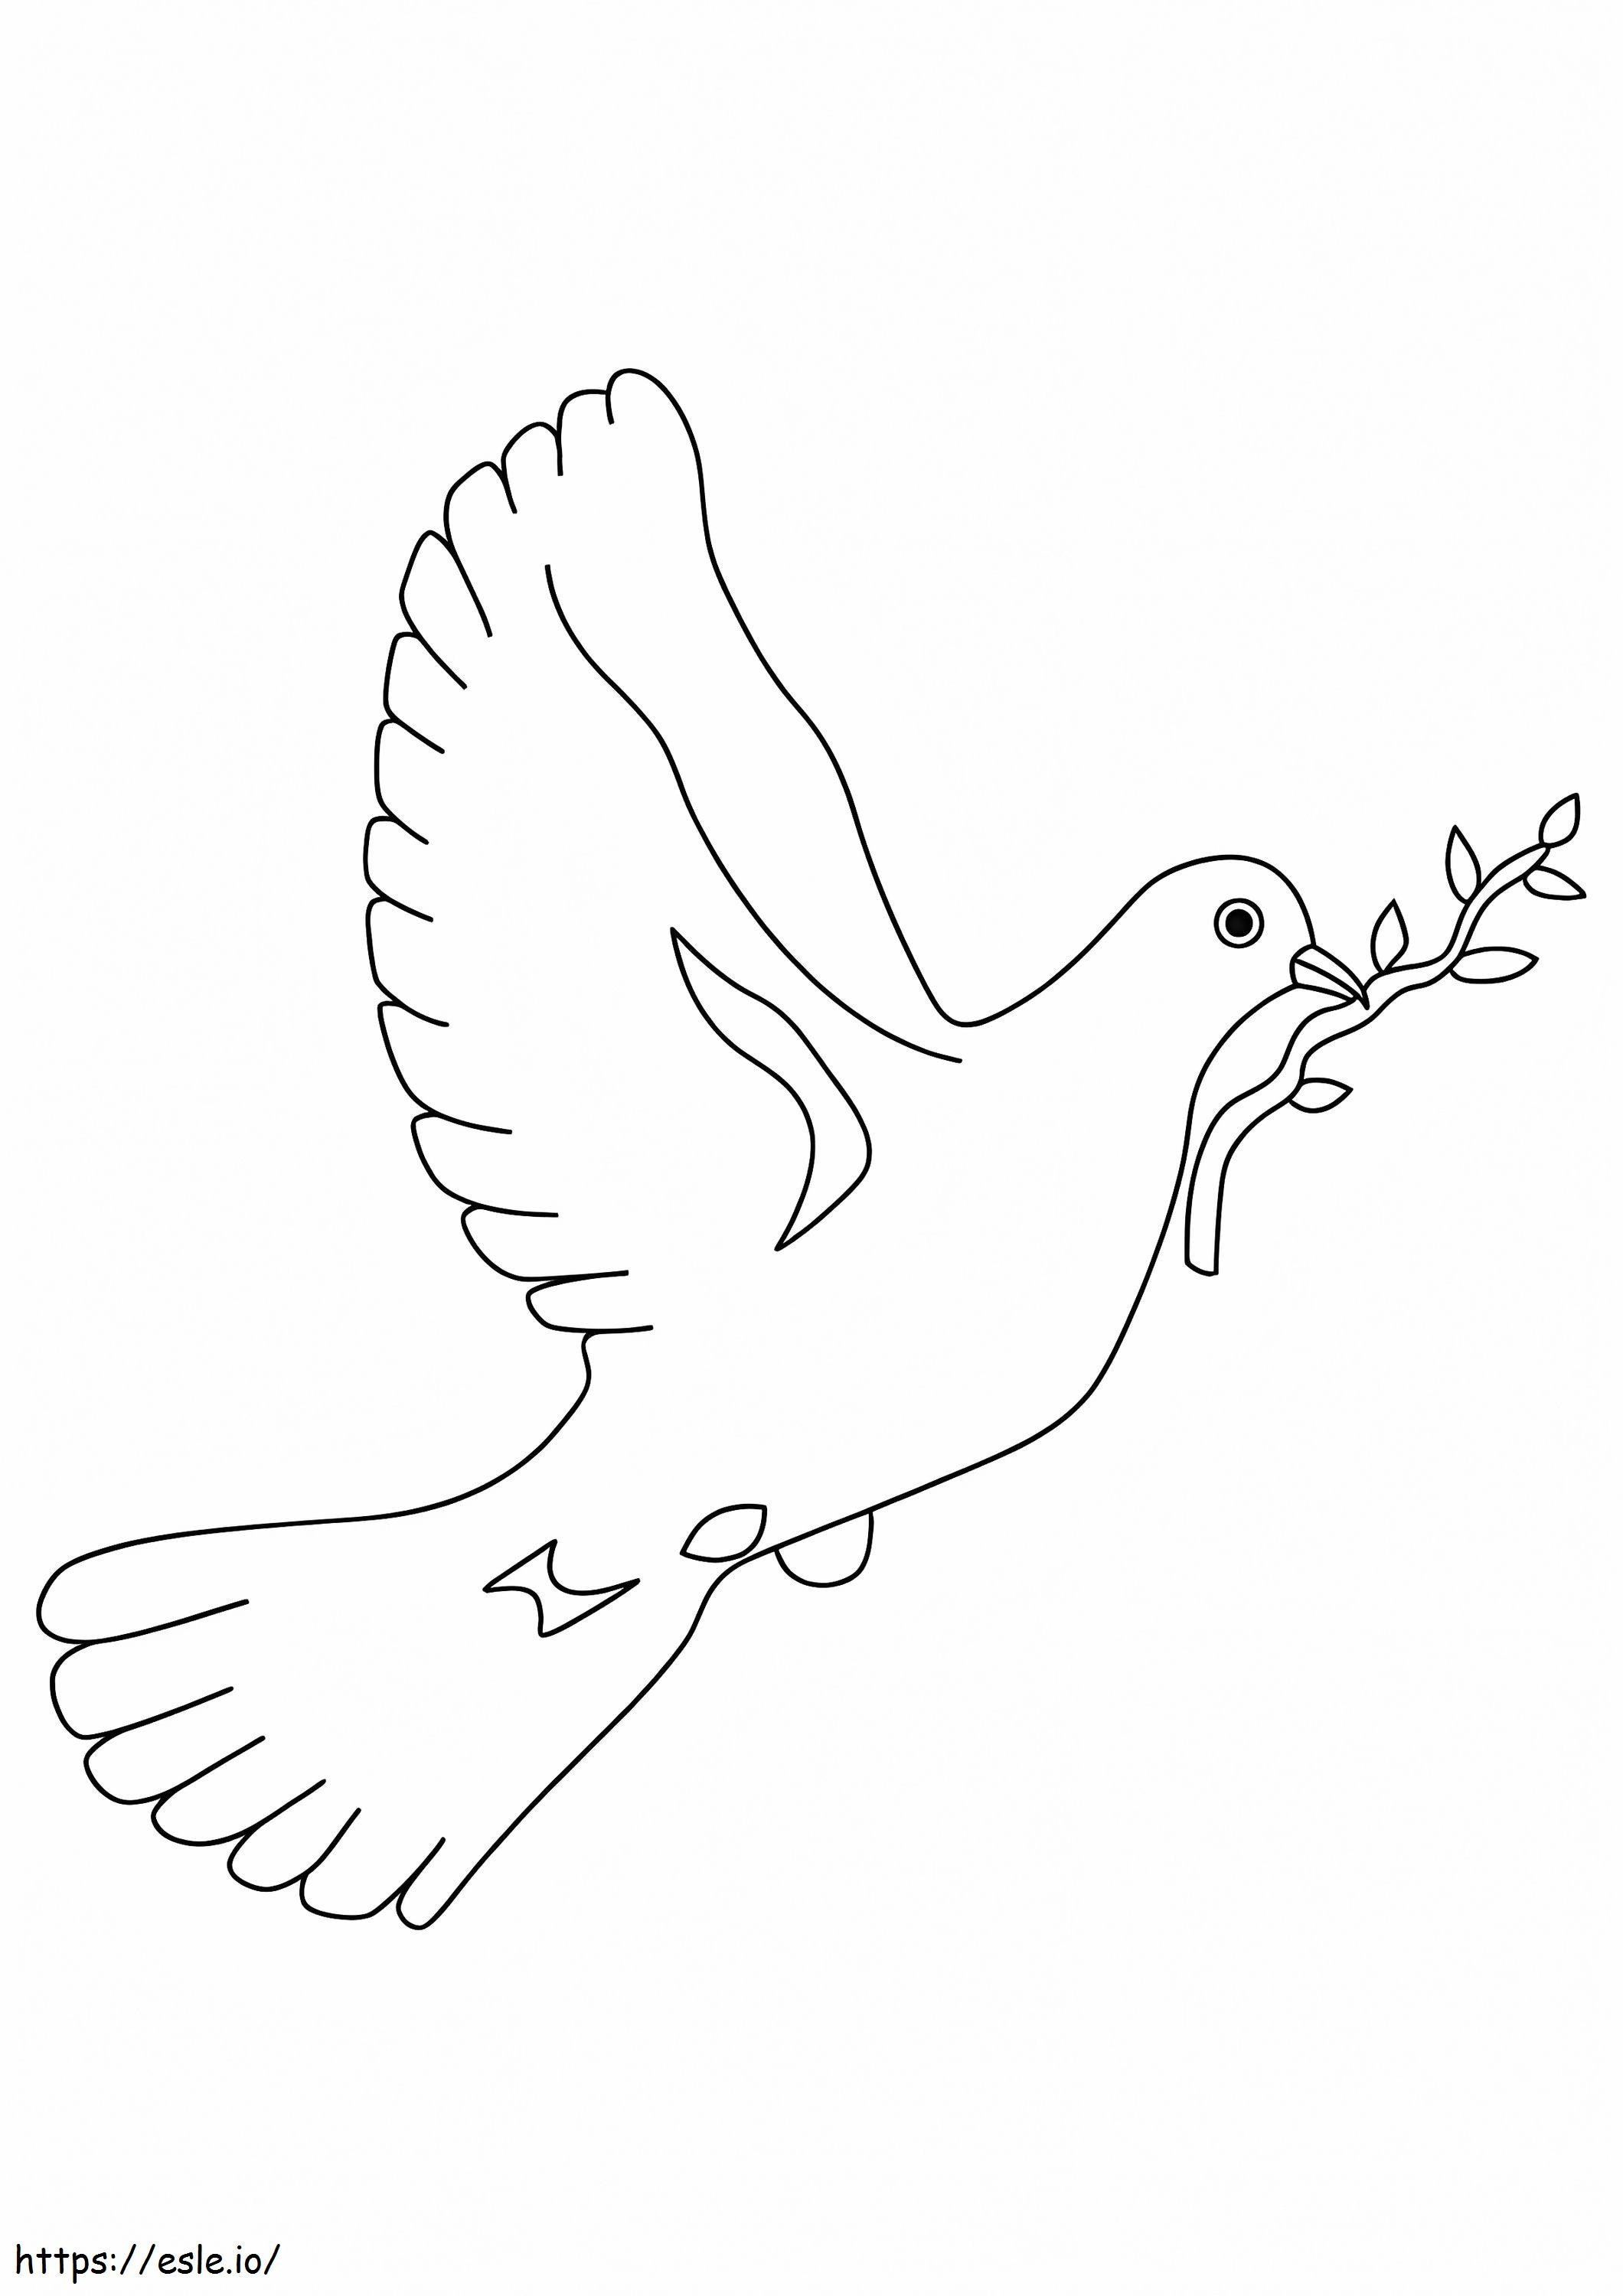 Das Symbol des Friedens ausmalbilder